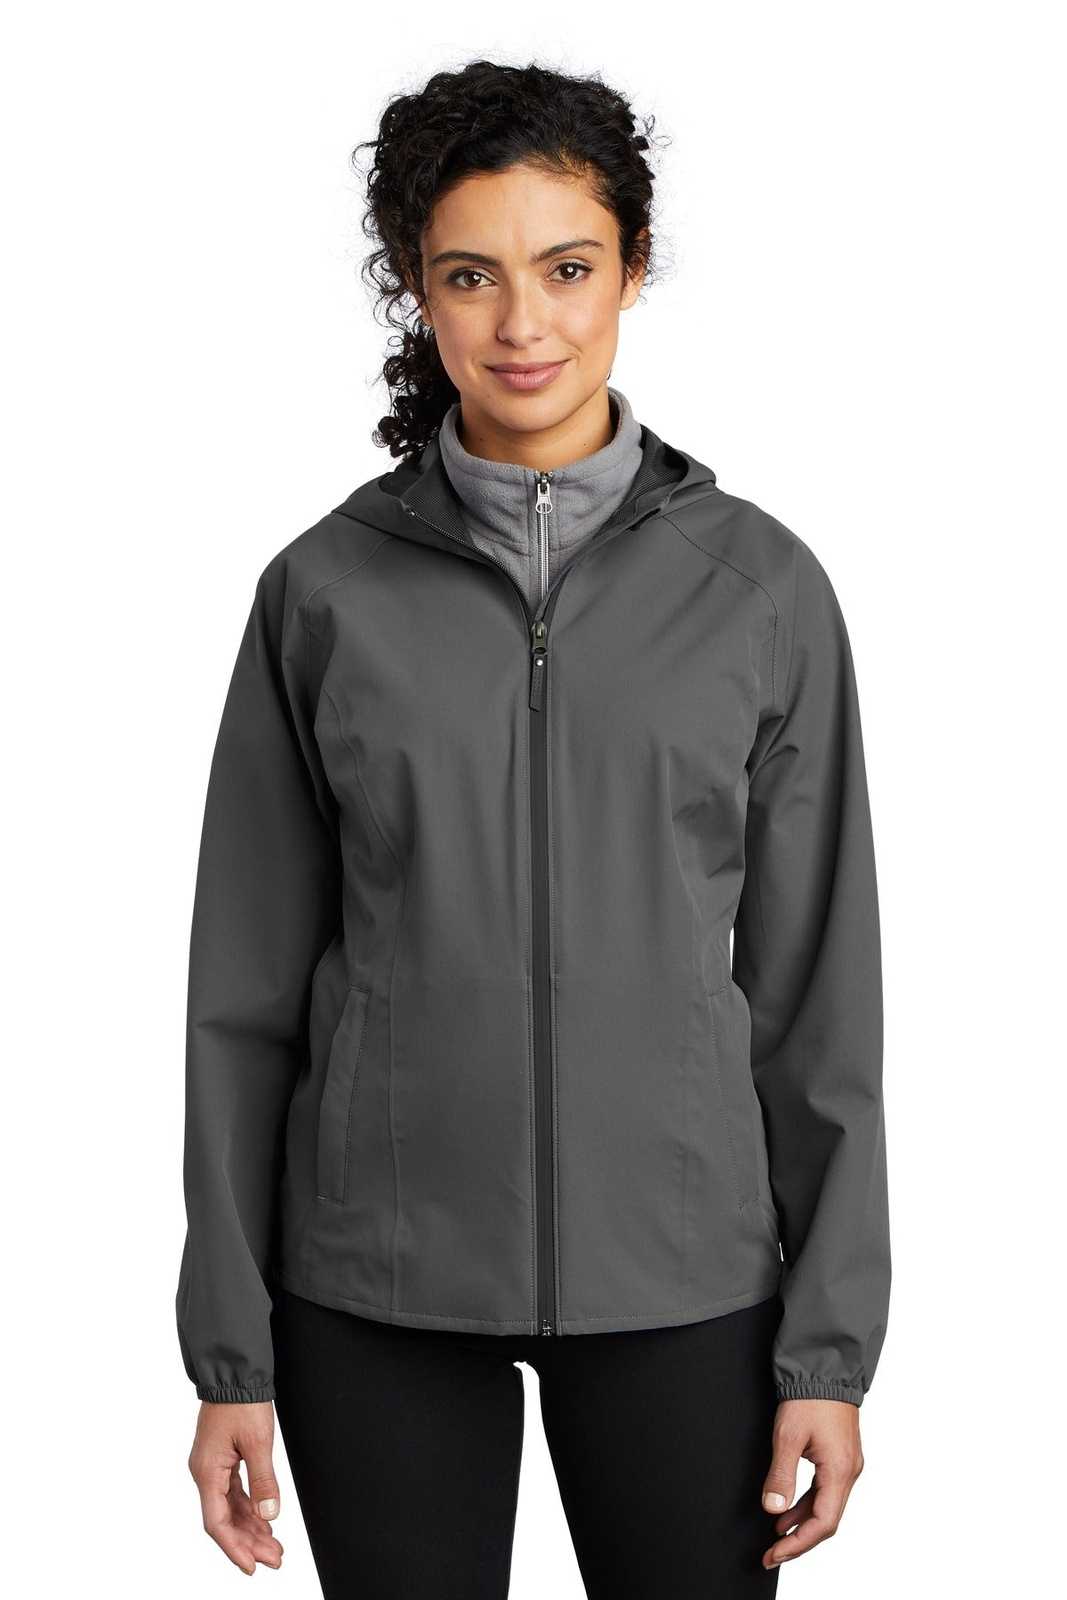 Port Authority L407 Ladies Essential Rain Jacket - Graphite Gray - HIT a Double - 1